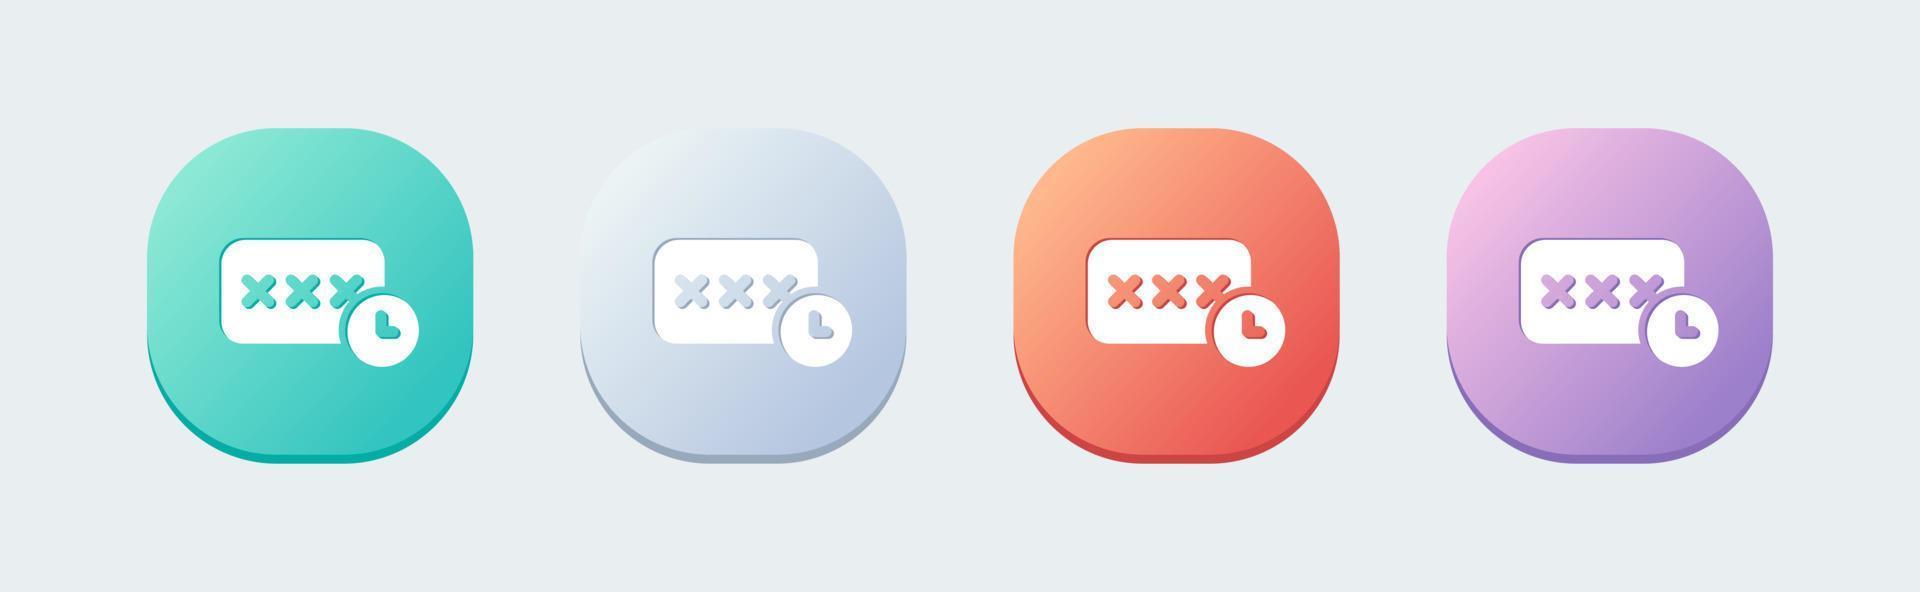 icône solide de mot de passe temporaire dans un style design plat. illustration vectorielle des signes d'accès. vecteur